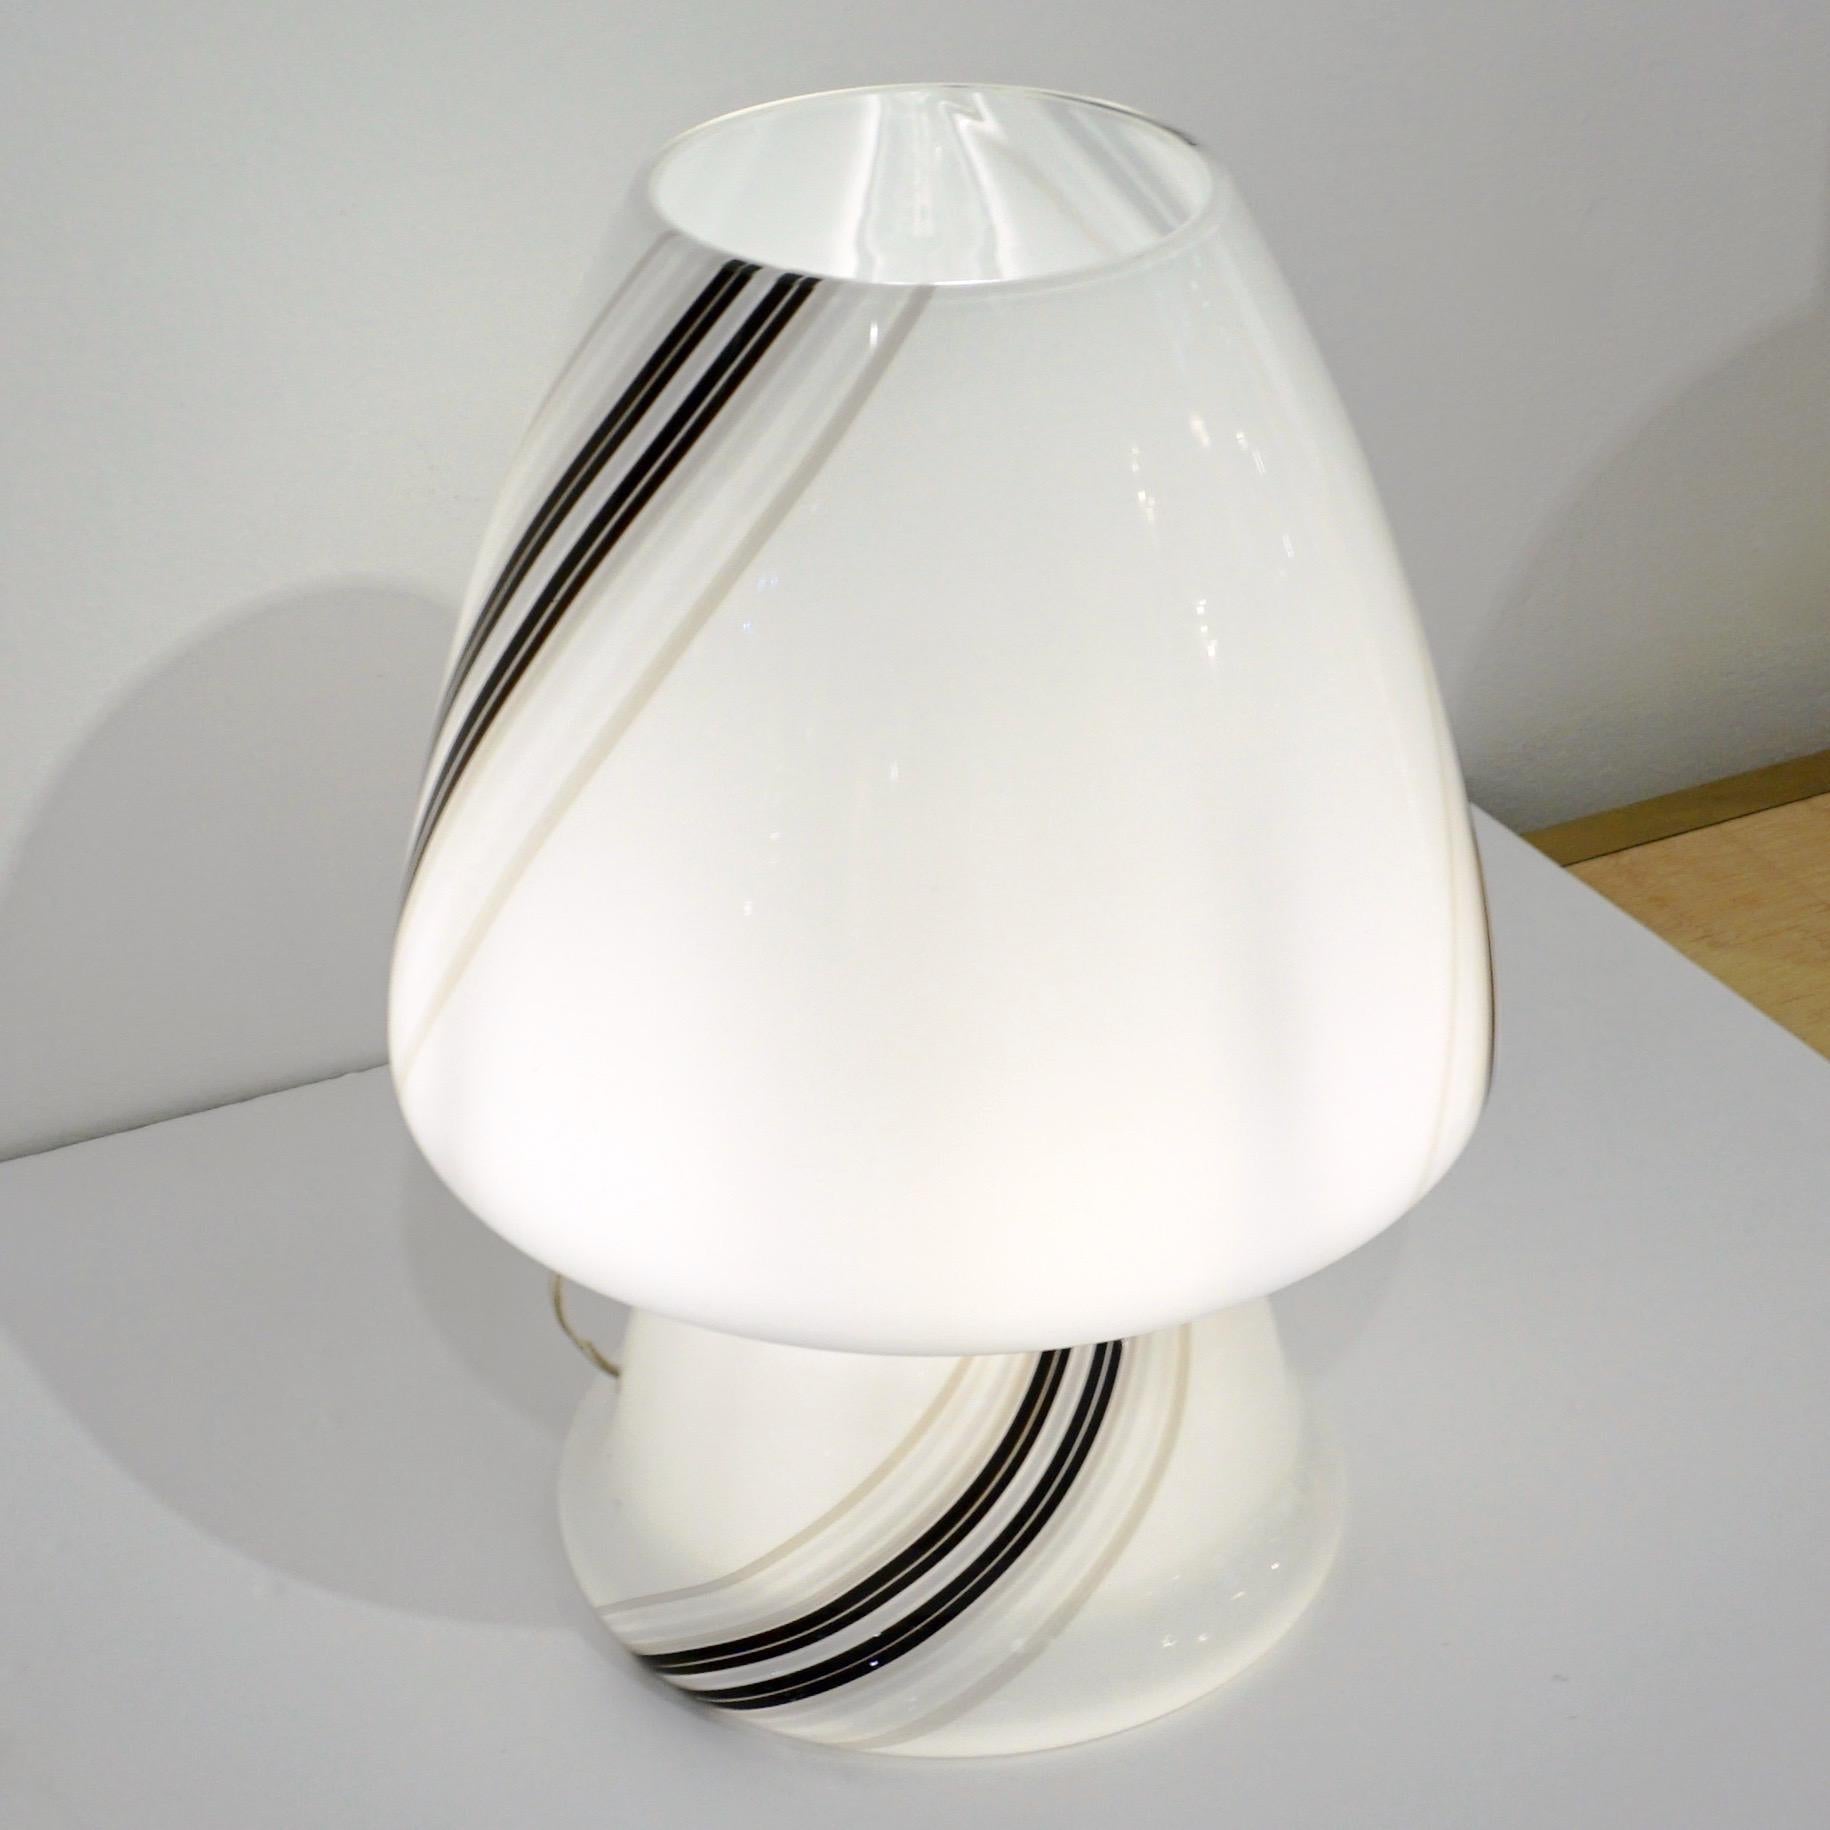 Une charmante lampe de table de design italien du milieu du 20e siècle, attribuée à Vistosi, de forme conique organique en forme de champignon, habilement soufflée comme une pièce unique en verre de Murano blanc artistiquement décoré avec d'élégants